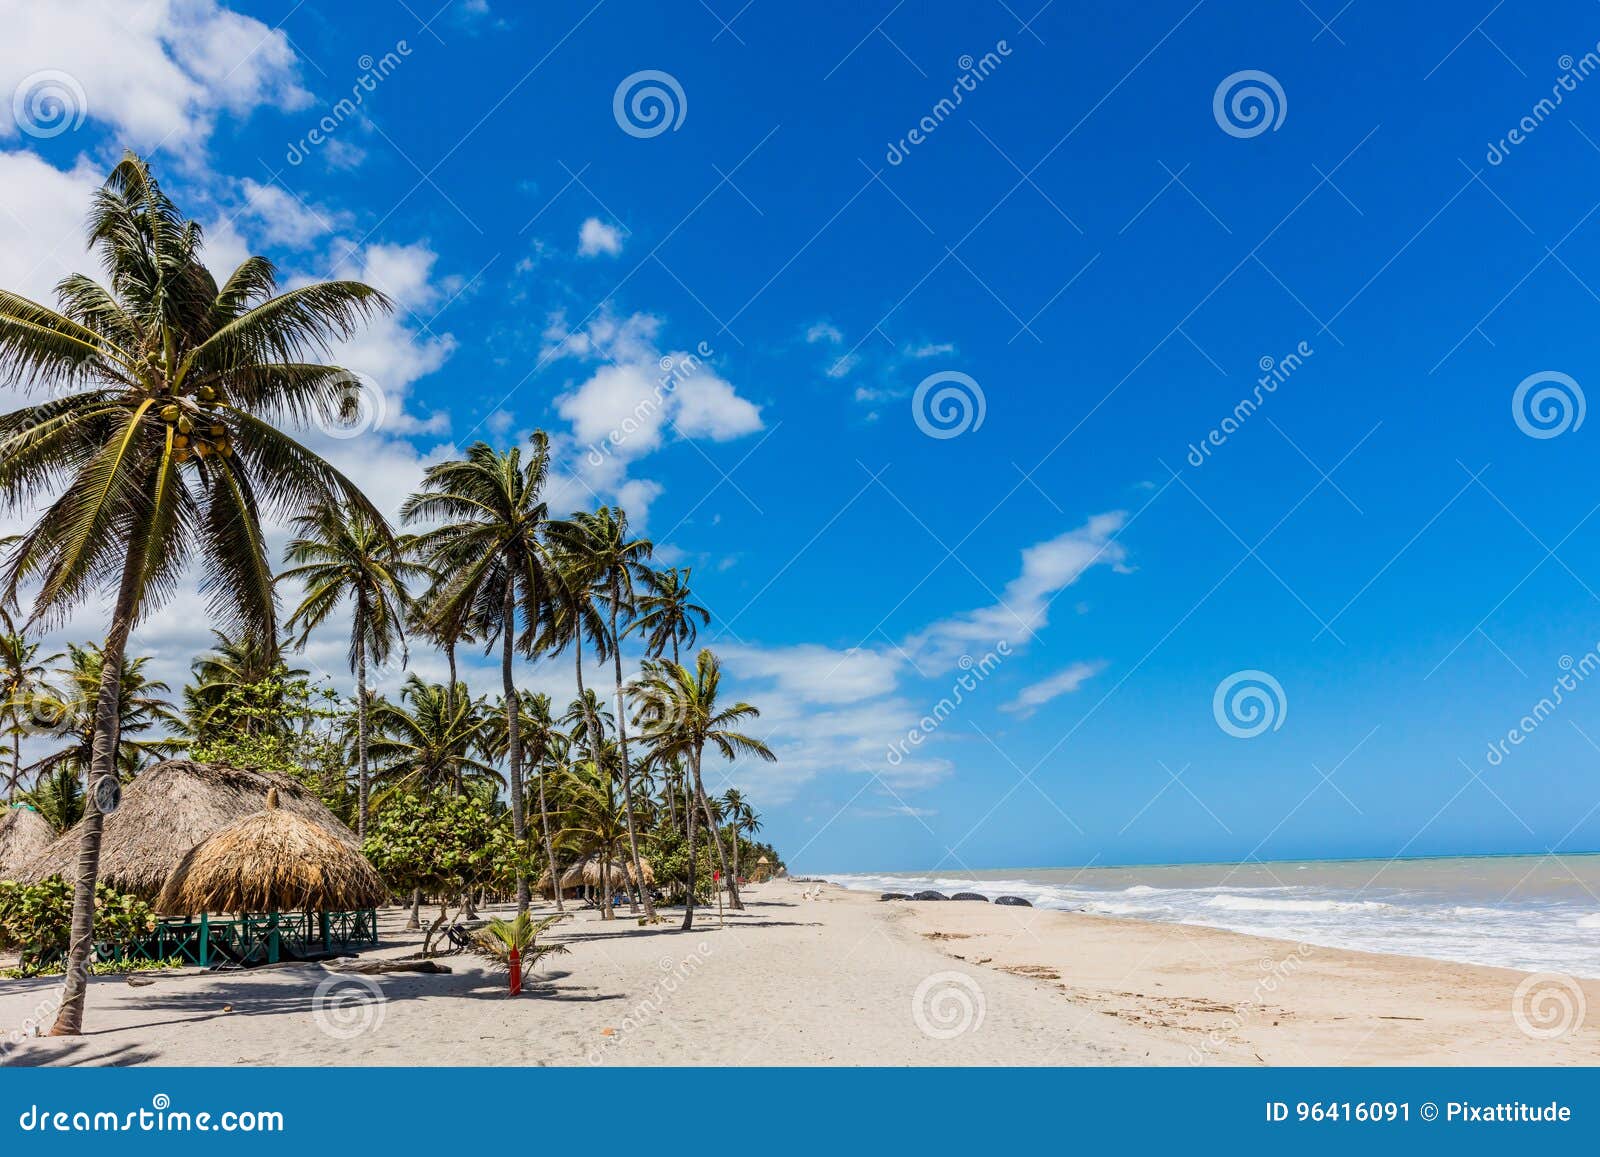 palomino beach landscapes la guajira colombia